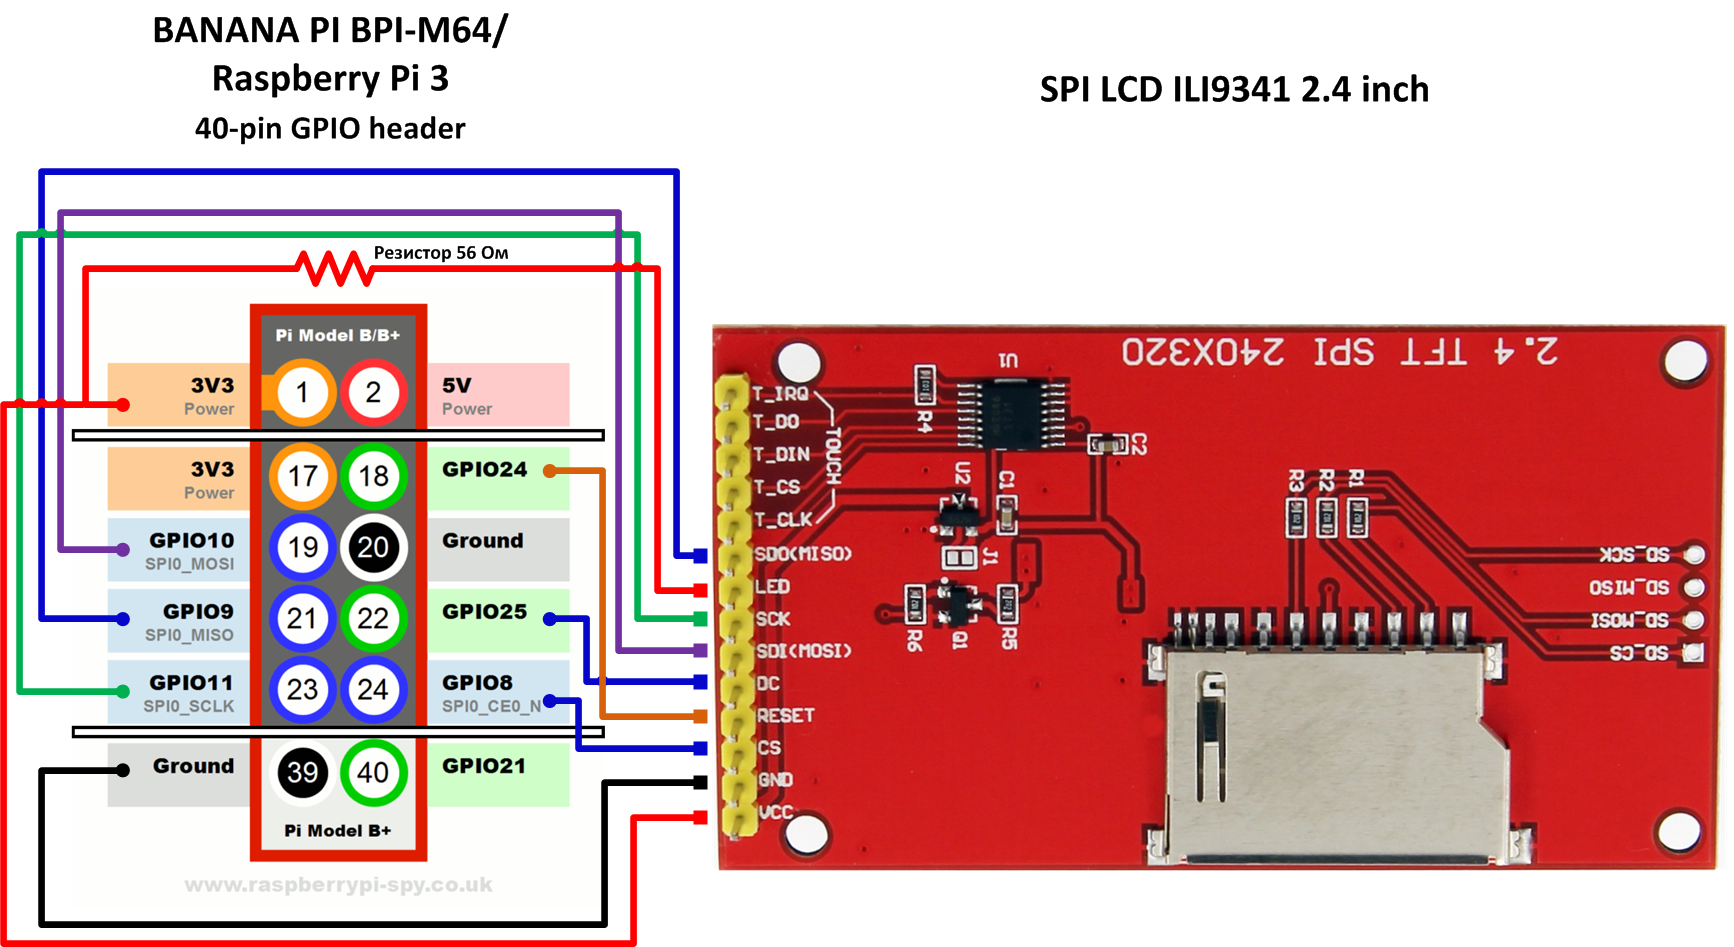 LCD SPI ILI9341 Banana Pi BPI-M64